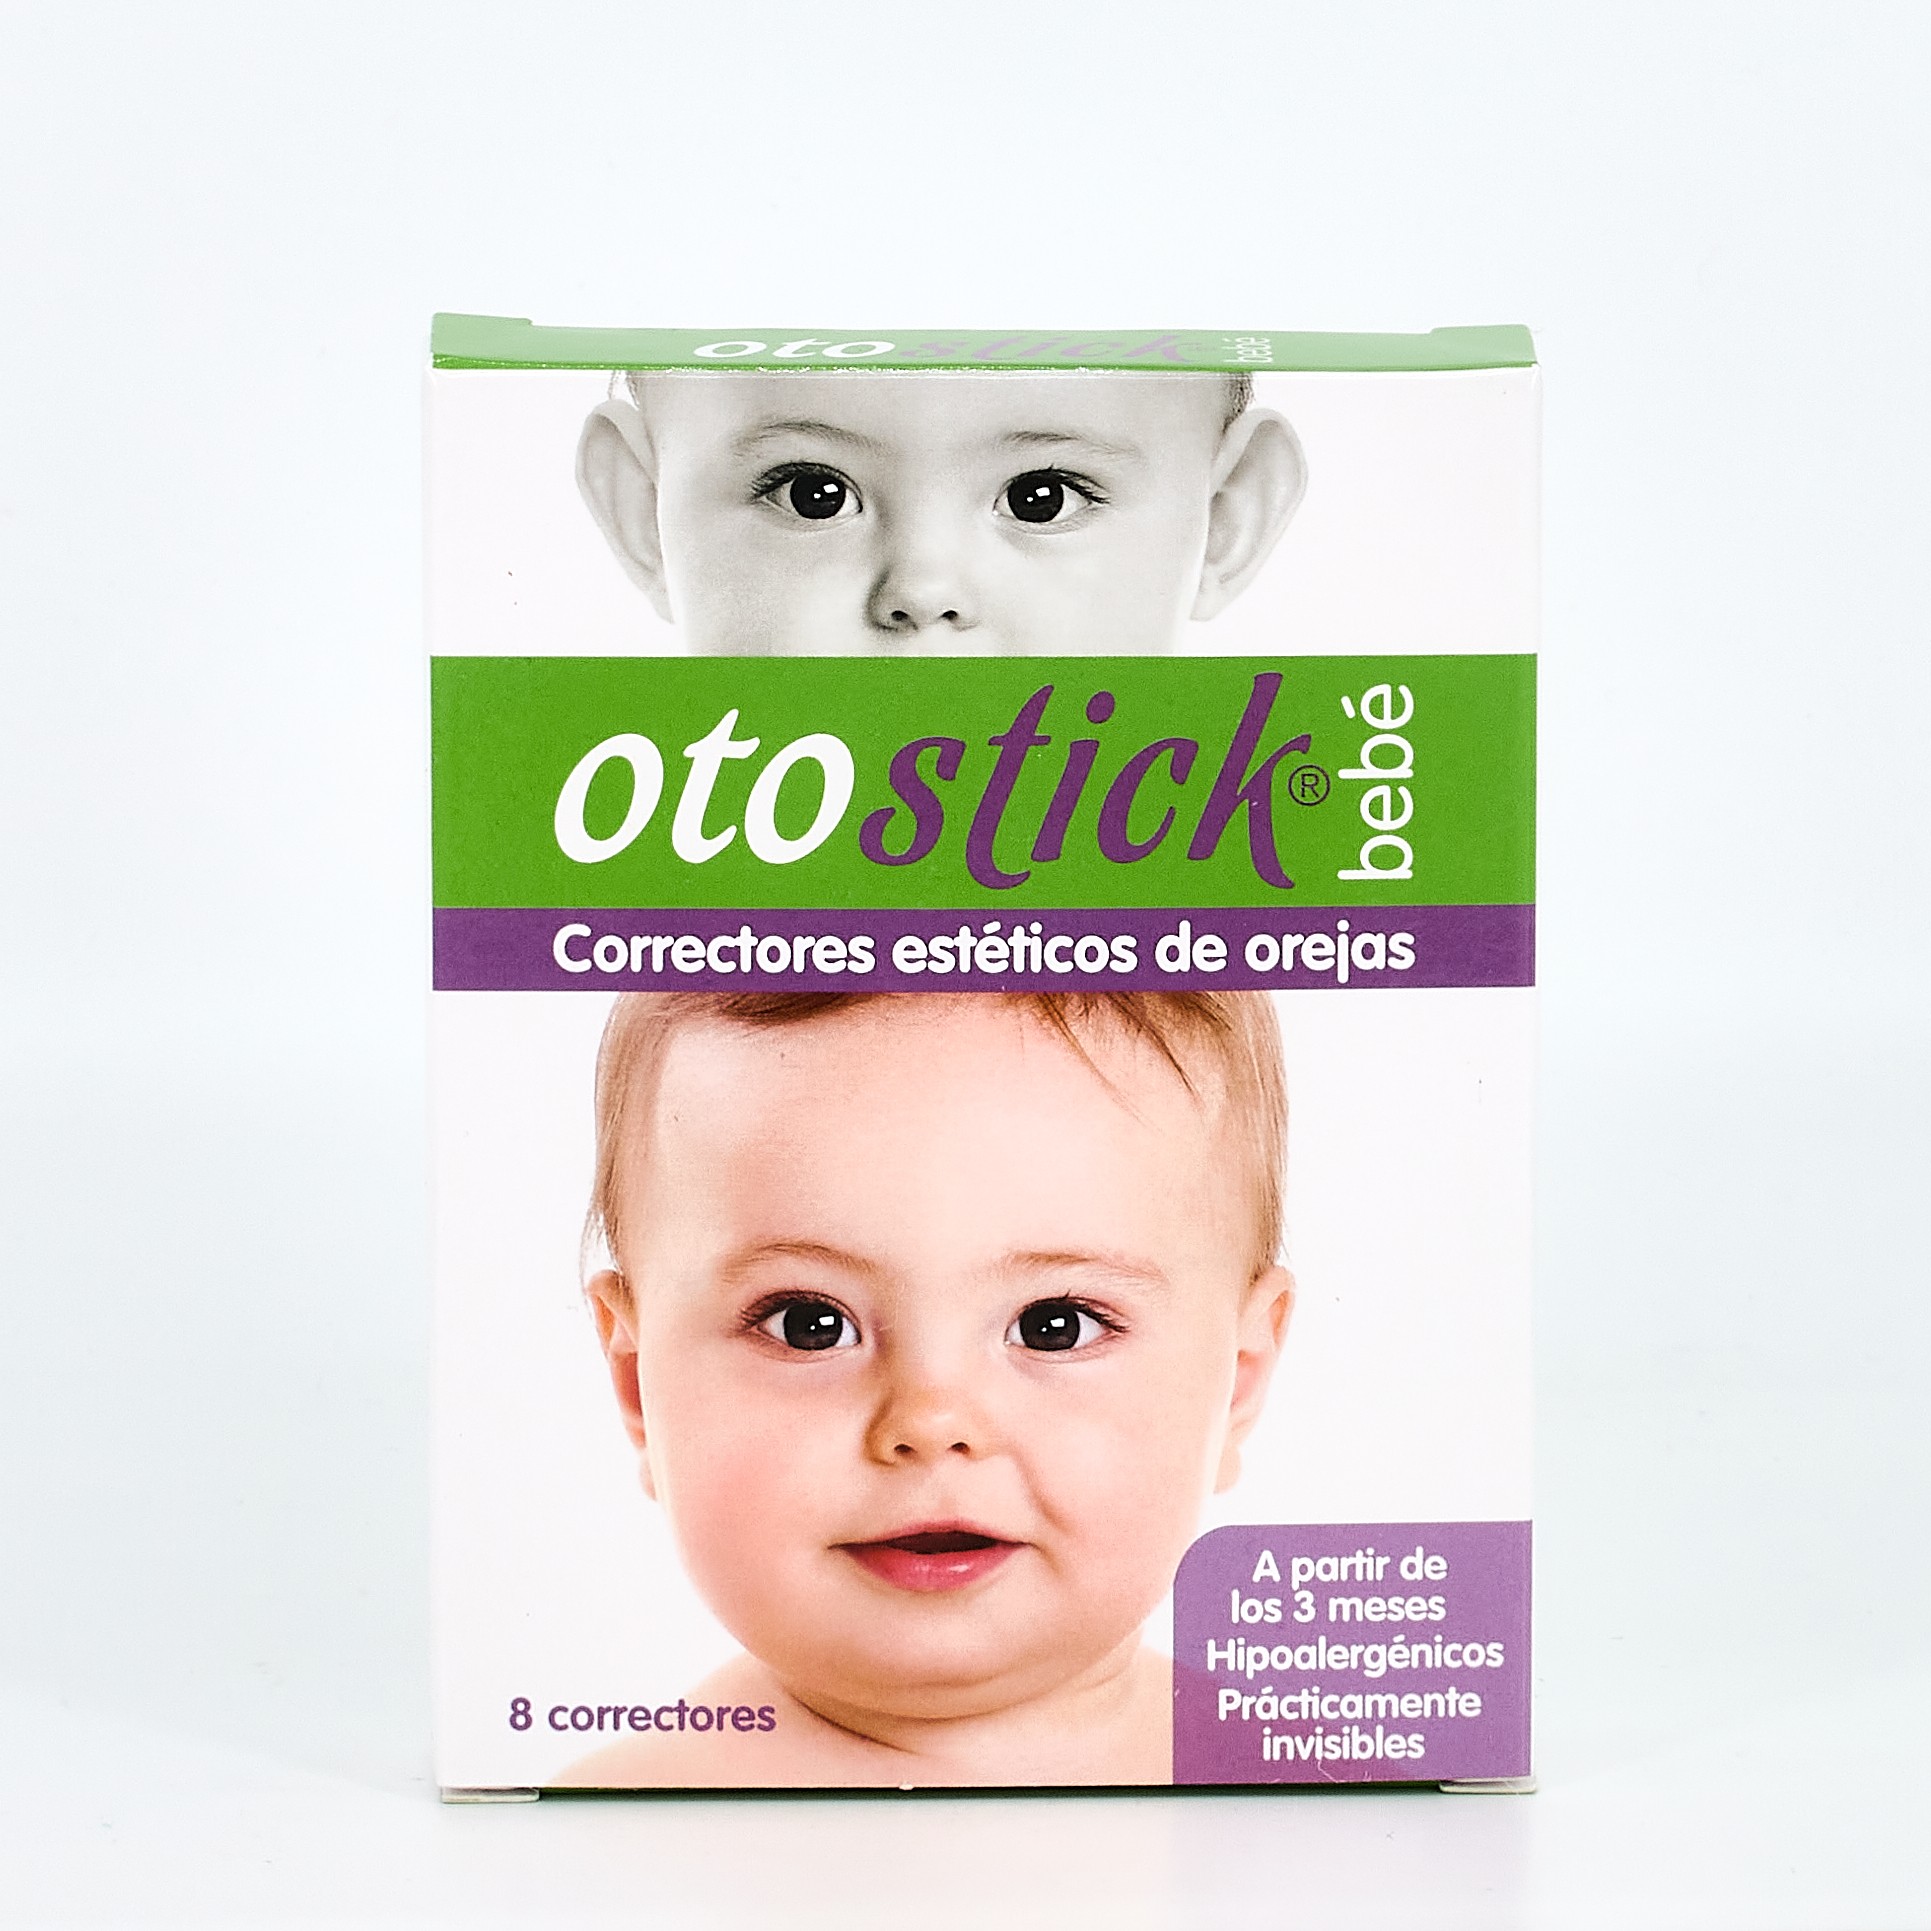 Otostick® Bebé 1 unidad